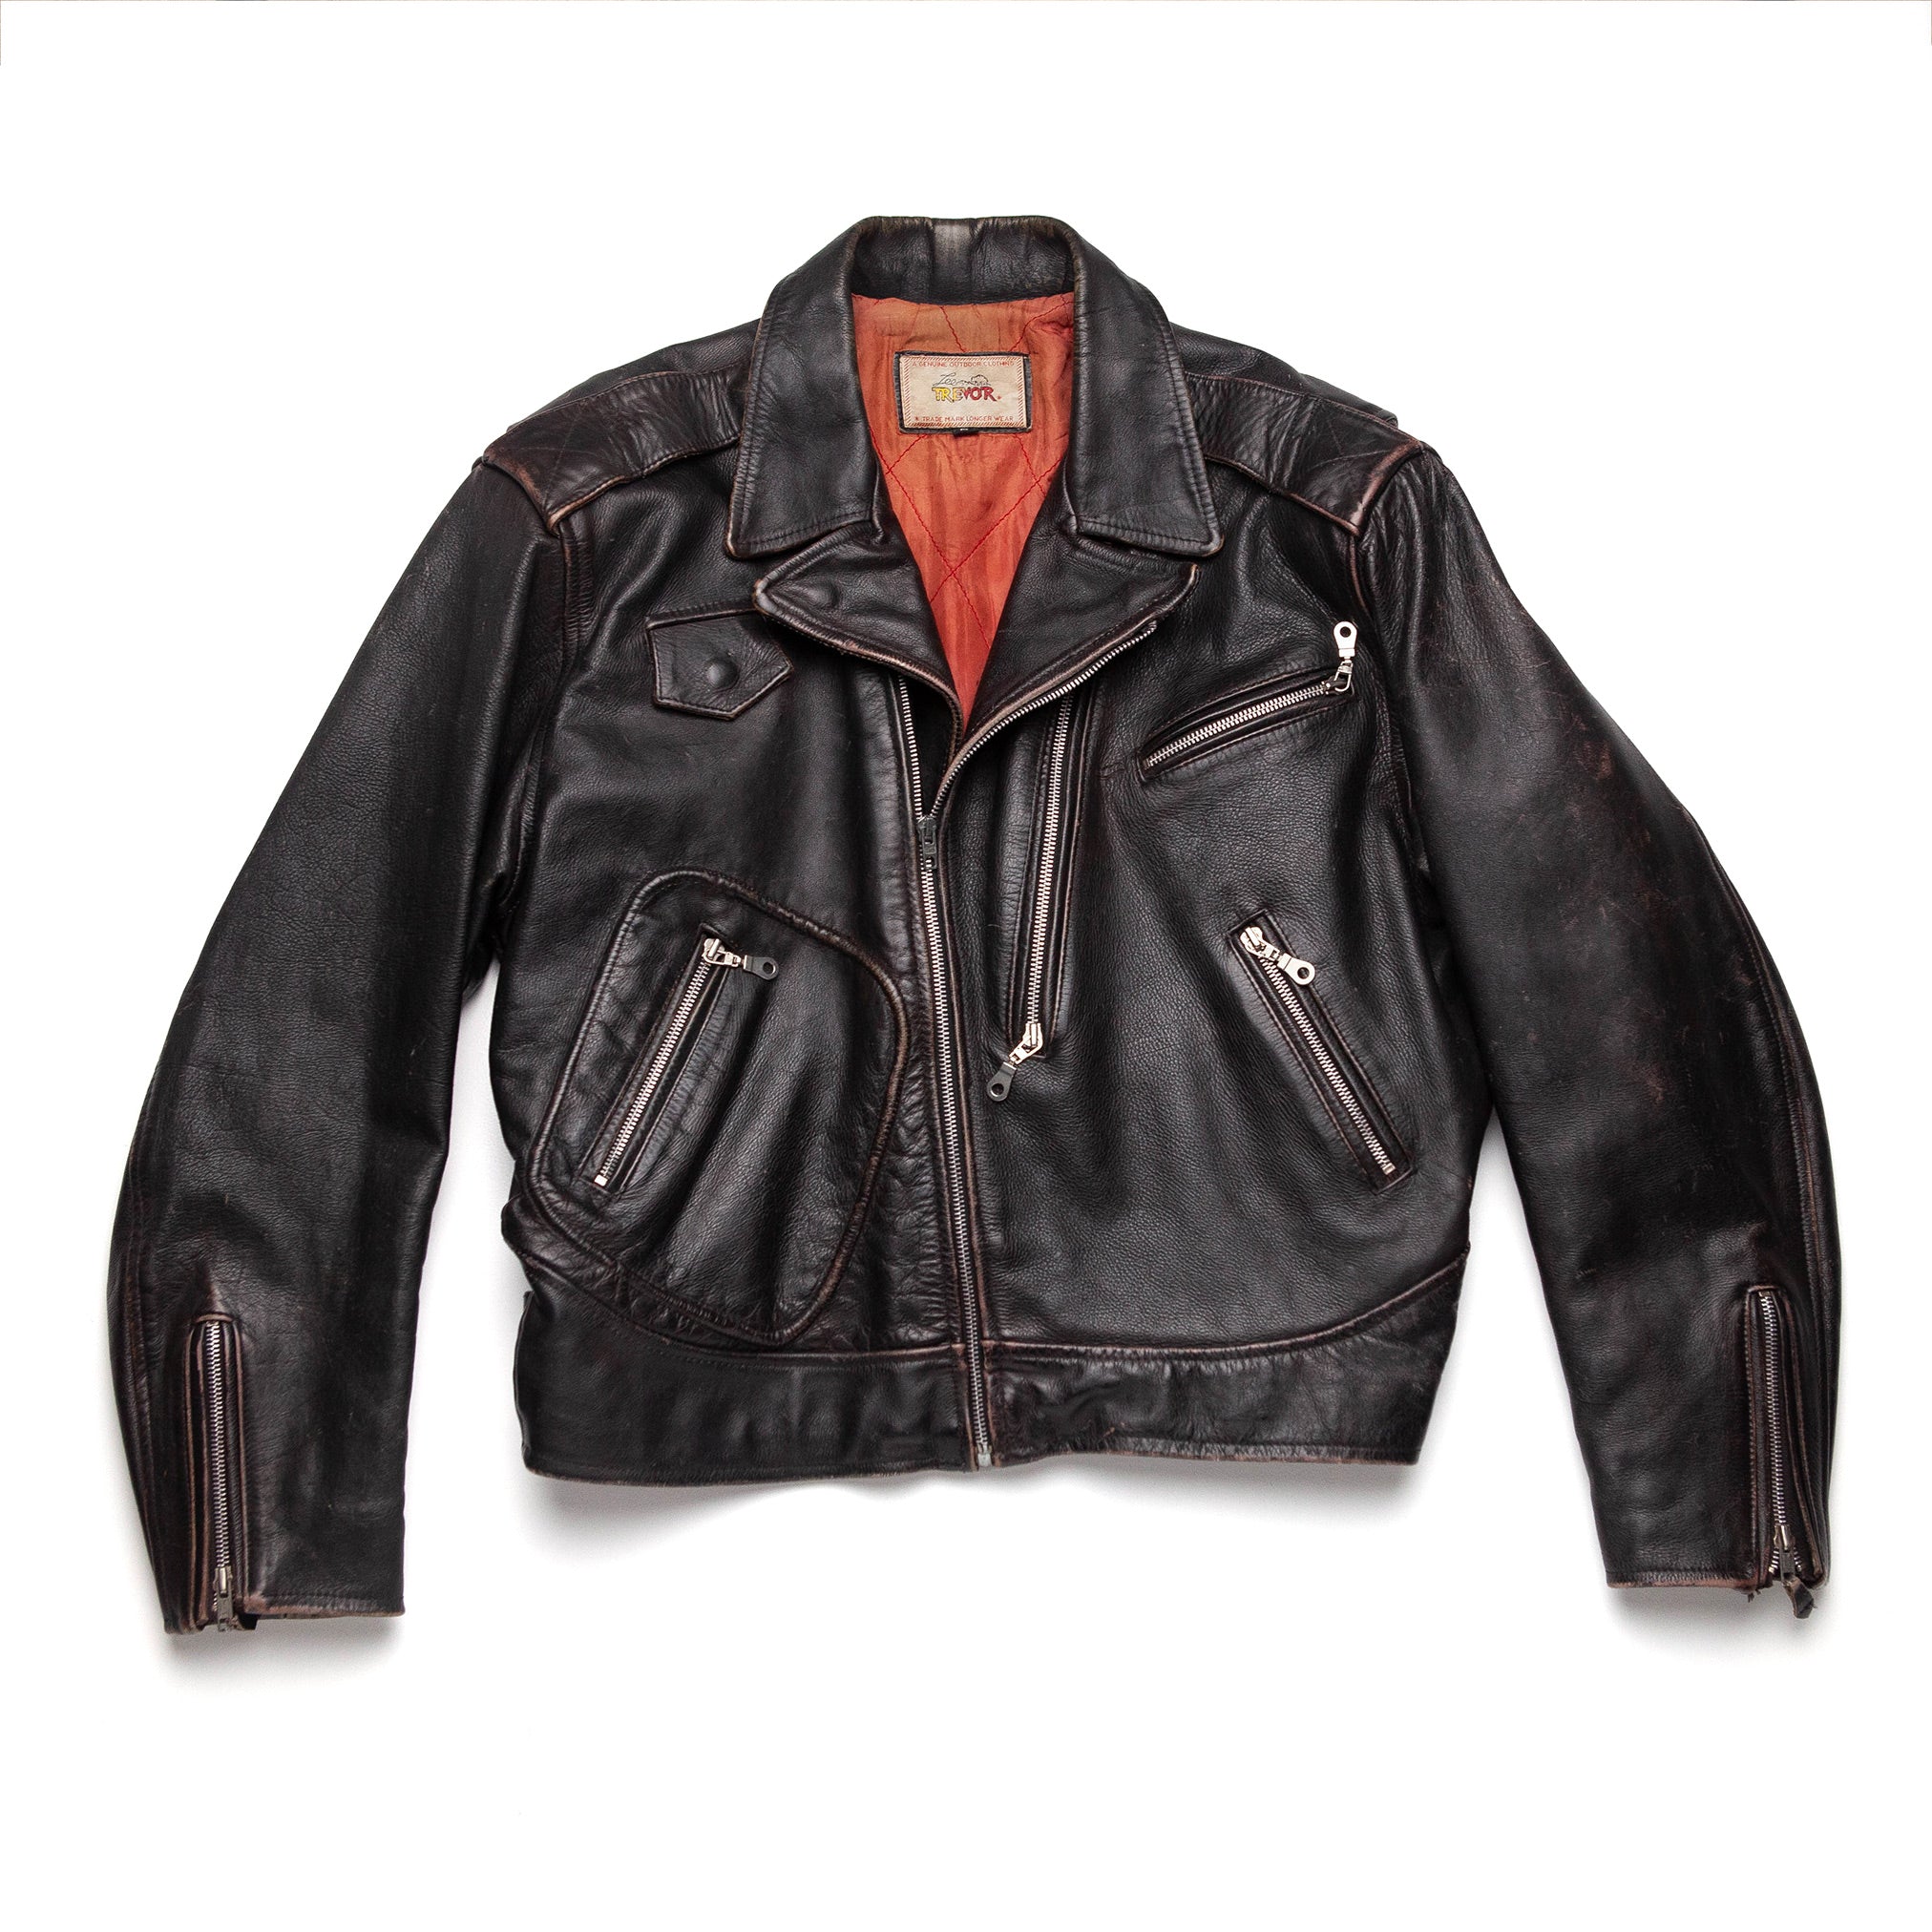 Trevor Lee Vintage Biker Jacket - M